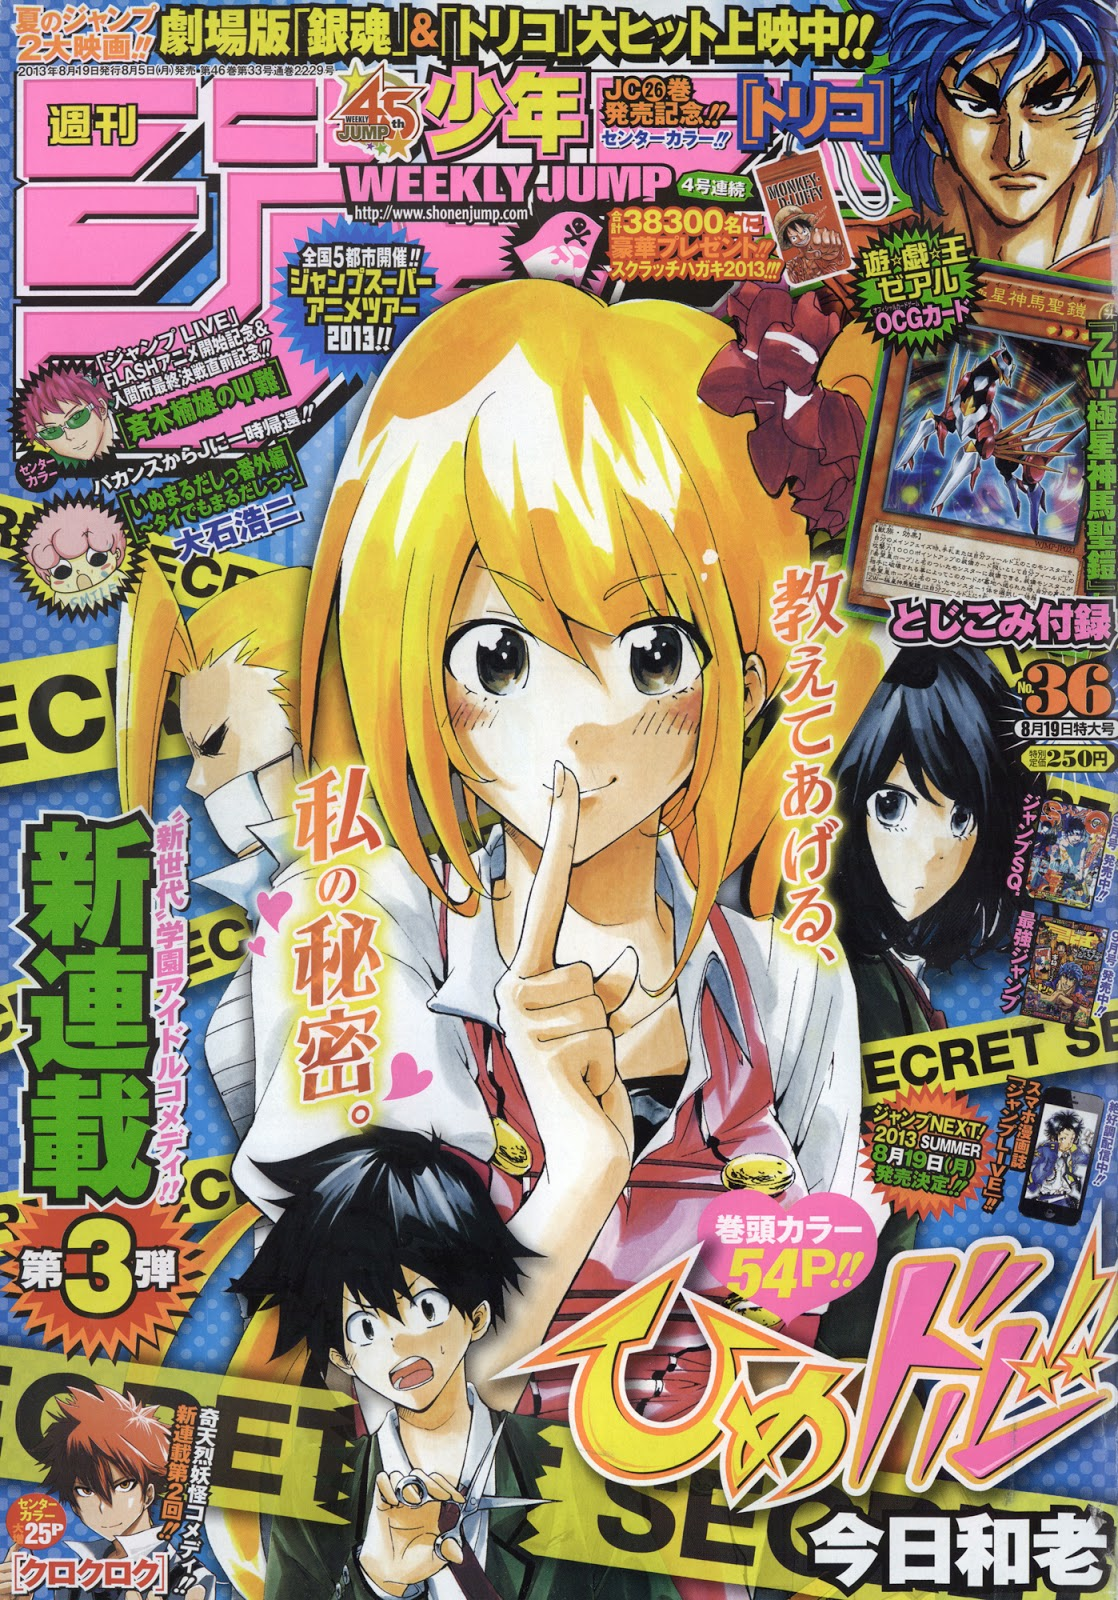 Weekly Shōnen Jump 13 Issue 36 Promotional Card Yu Gi Oh Wiki Fandom